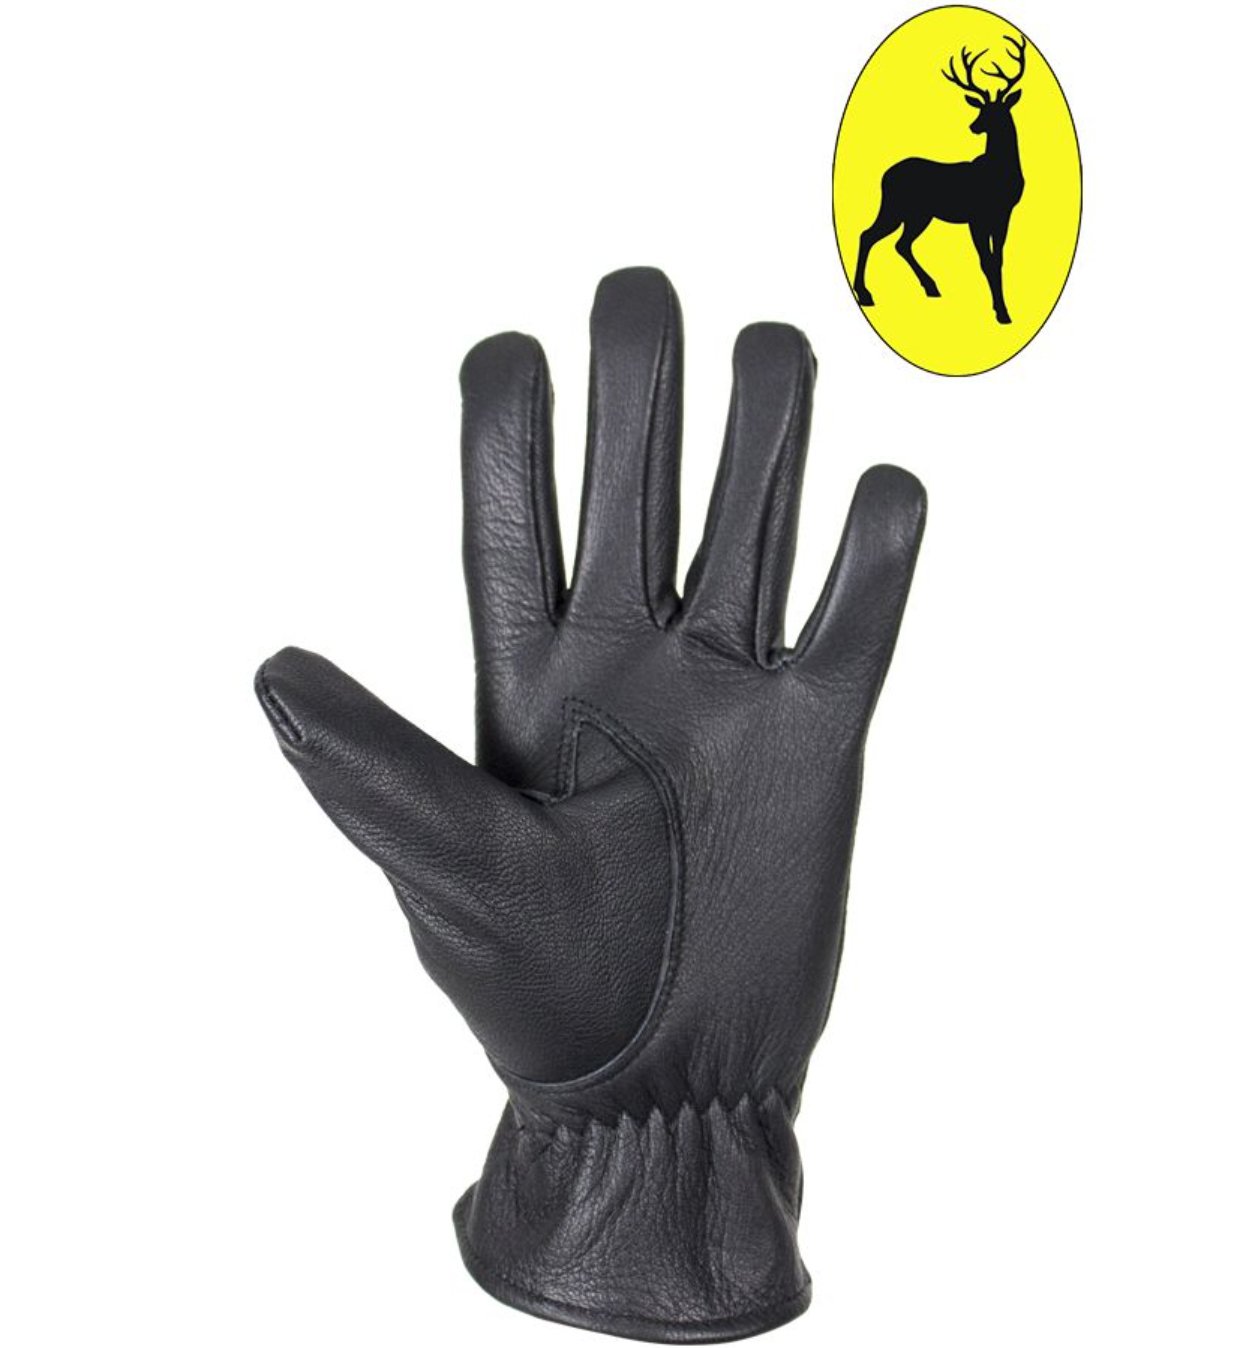 Leather Motorcycle Gloves - Women's - Deer Skin - Zipper - Biker - GLD114-22-DL